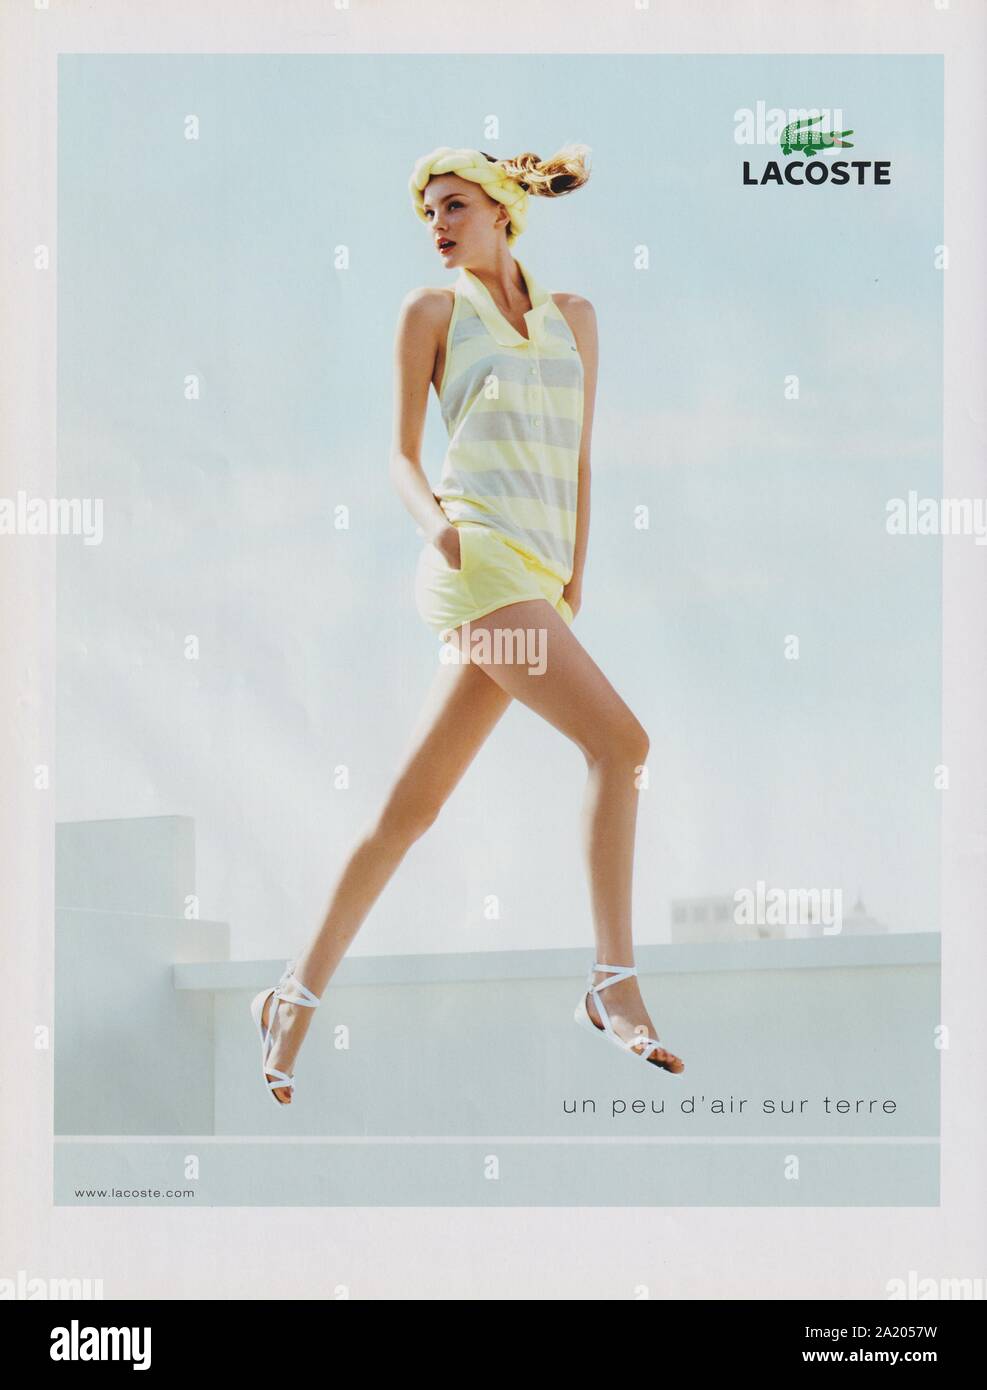 Poster pubblicitari Lacoste casa di moda in magazzino carta dal 2007 anno, pubblicità creative Lacoste annuncio da 2000s Foto Stock